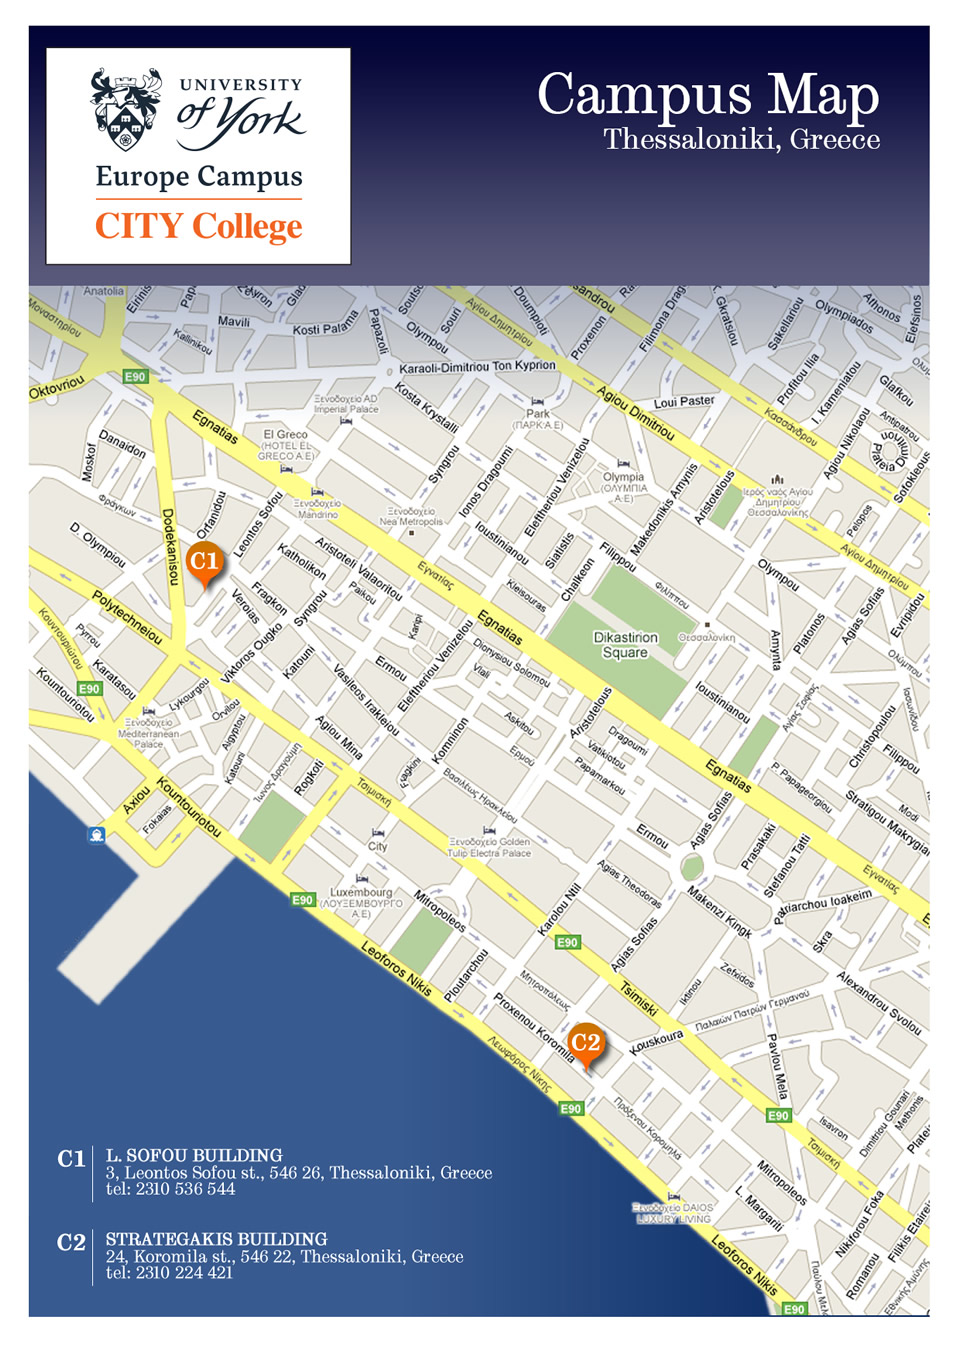 CITY College campus map